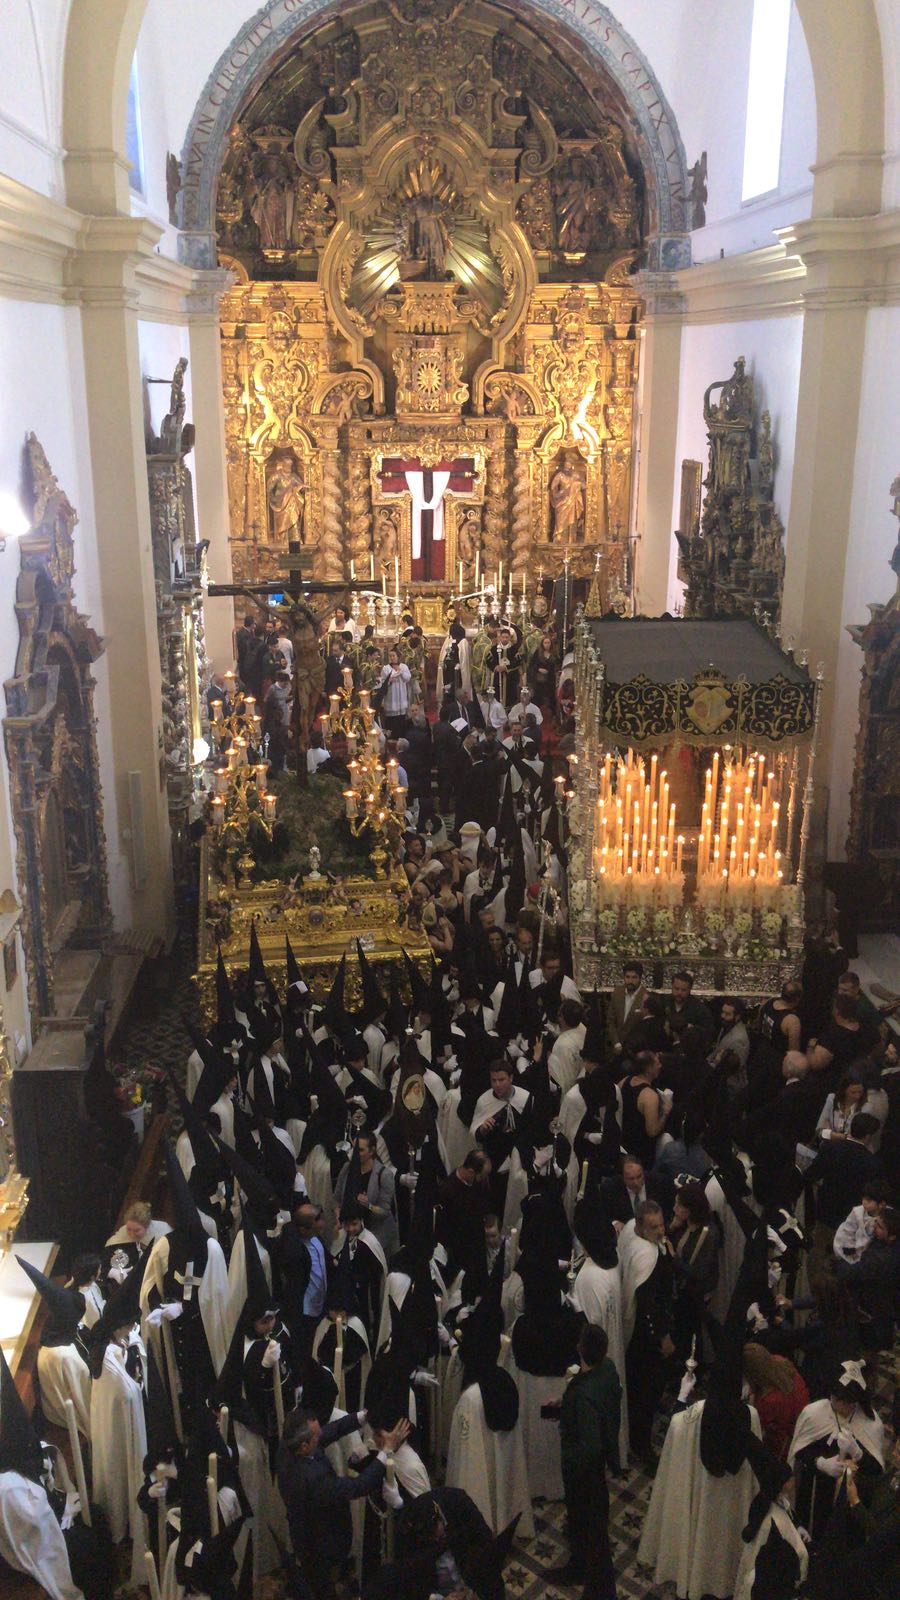 Horarios programados para el Jueves Santo en la Parroquia de San Nicol�s